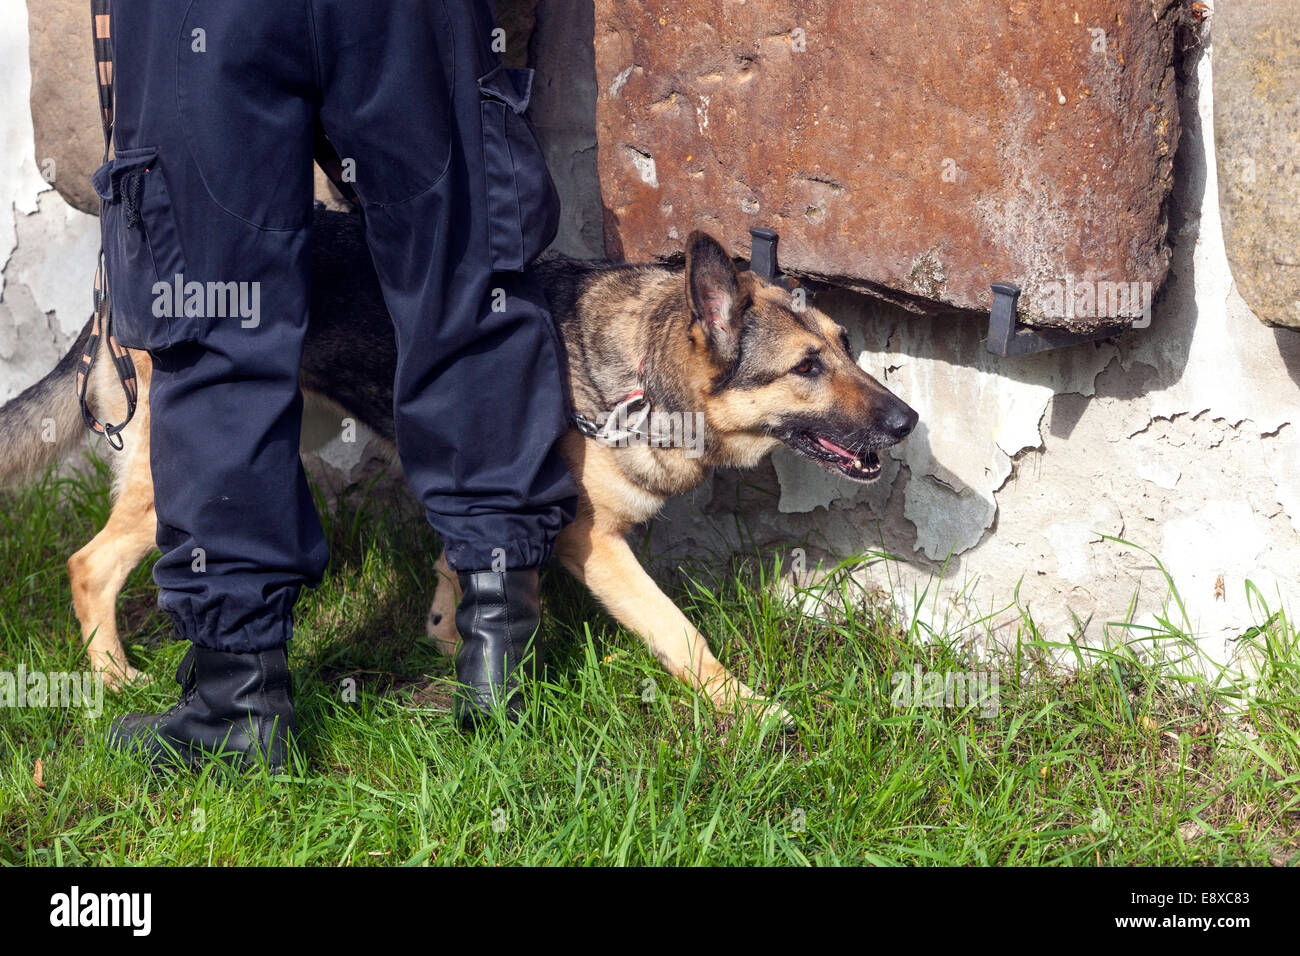 Polizeihund sucht Sprengstoff, Ein deutscher Hirte inspiziert ein Objekt, Polizeihund schnüffelt Sprengstoff, Mann und Hund Stockfoto